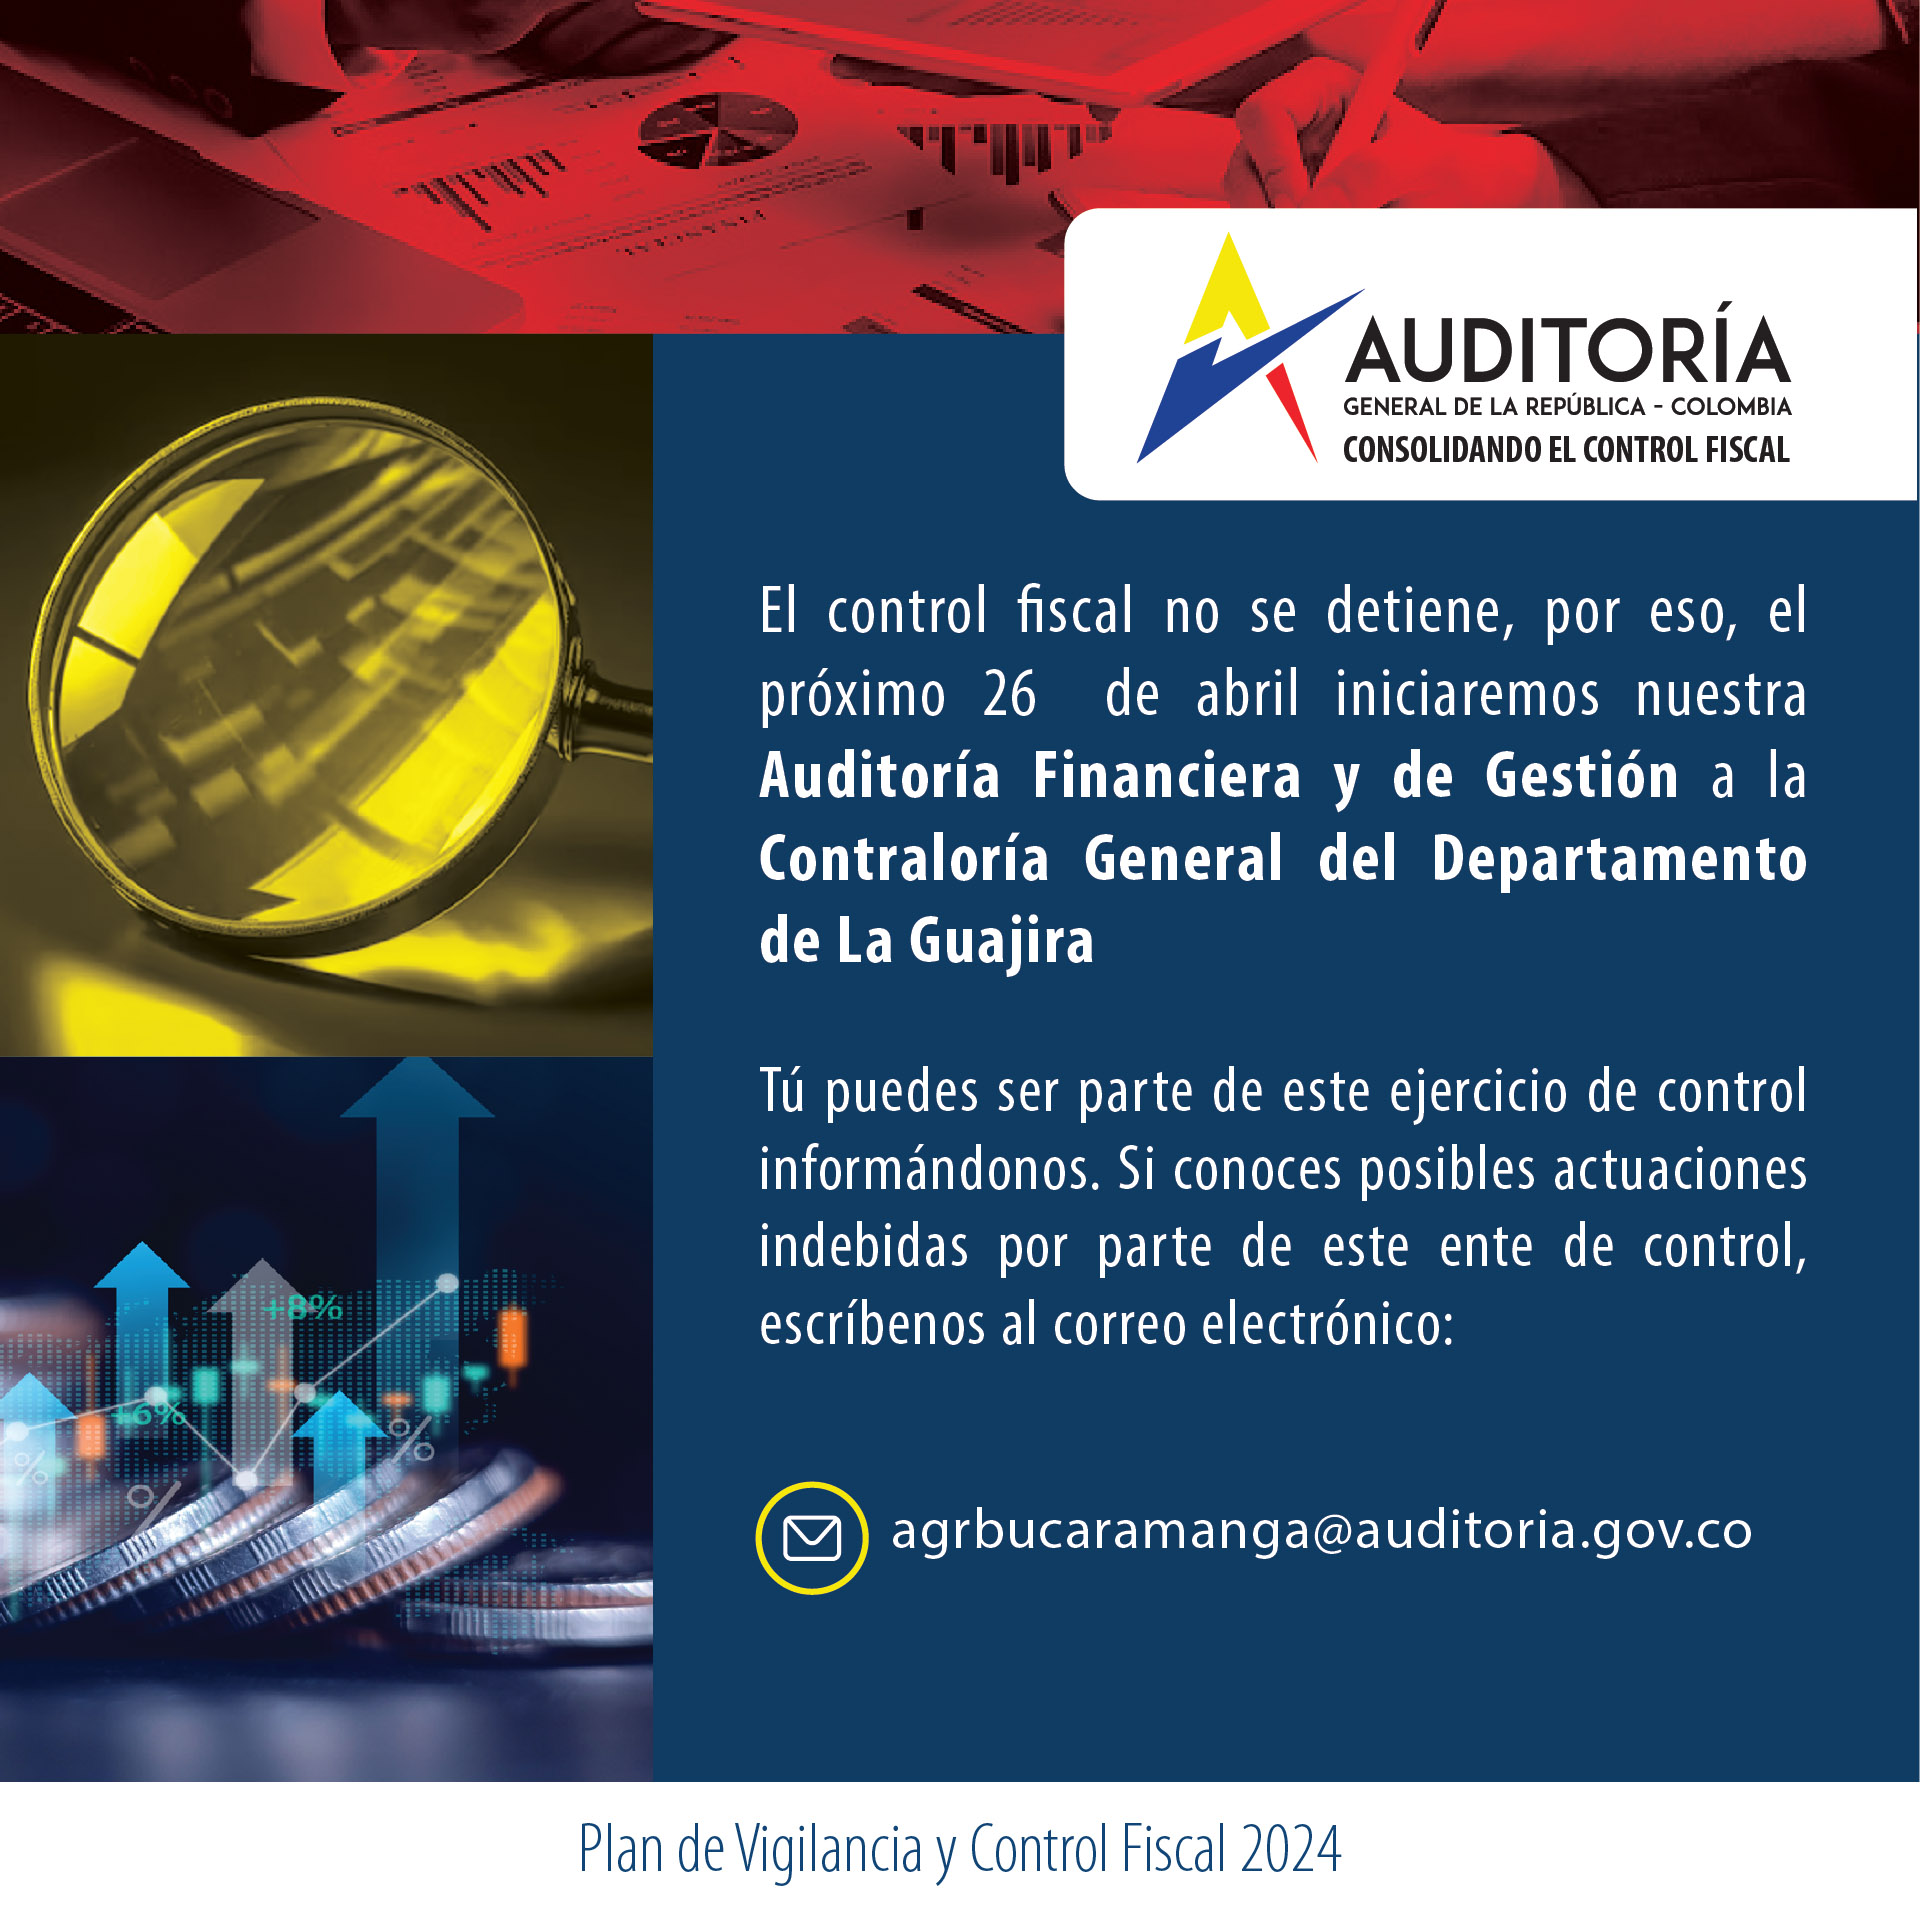 Invitación a ciudadanía a brindar información para Auditoría Financiera y de Gestión a Contraloría de La Guajira